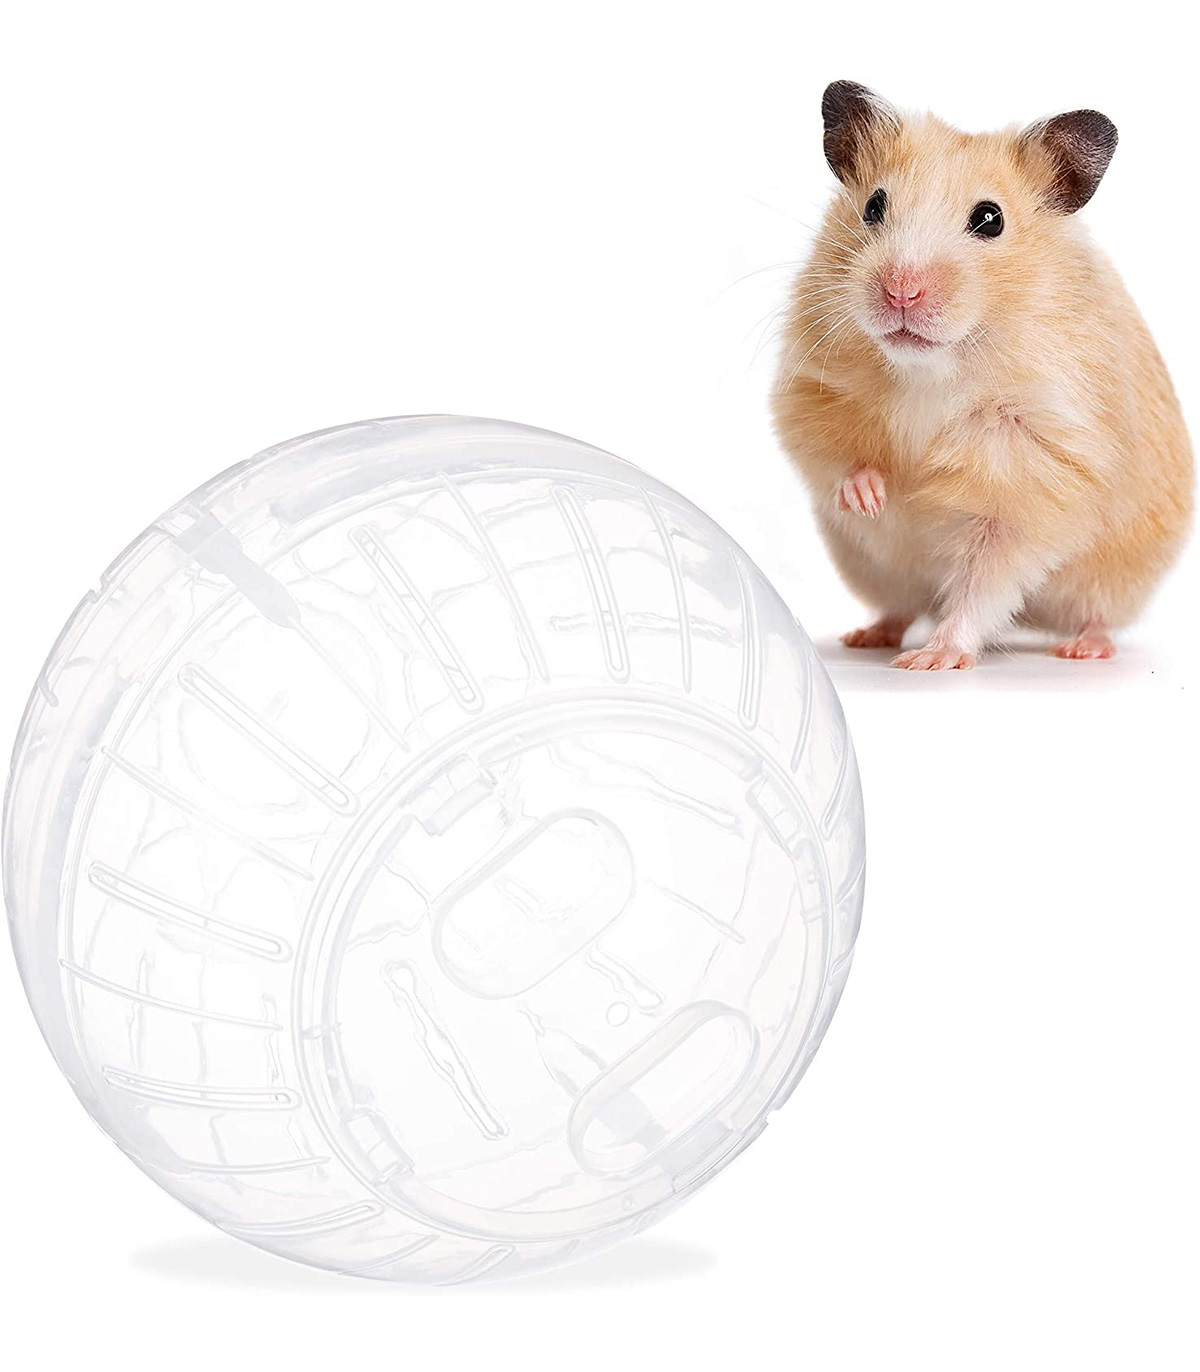 Minge hamster transparenta familio.ro pret redus imagine 2022